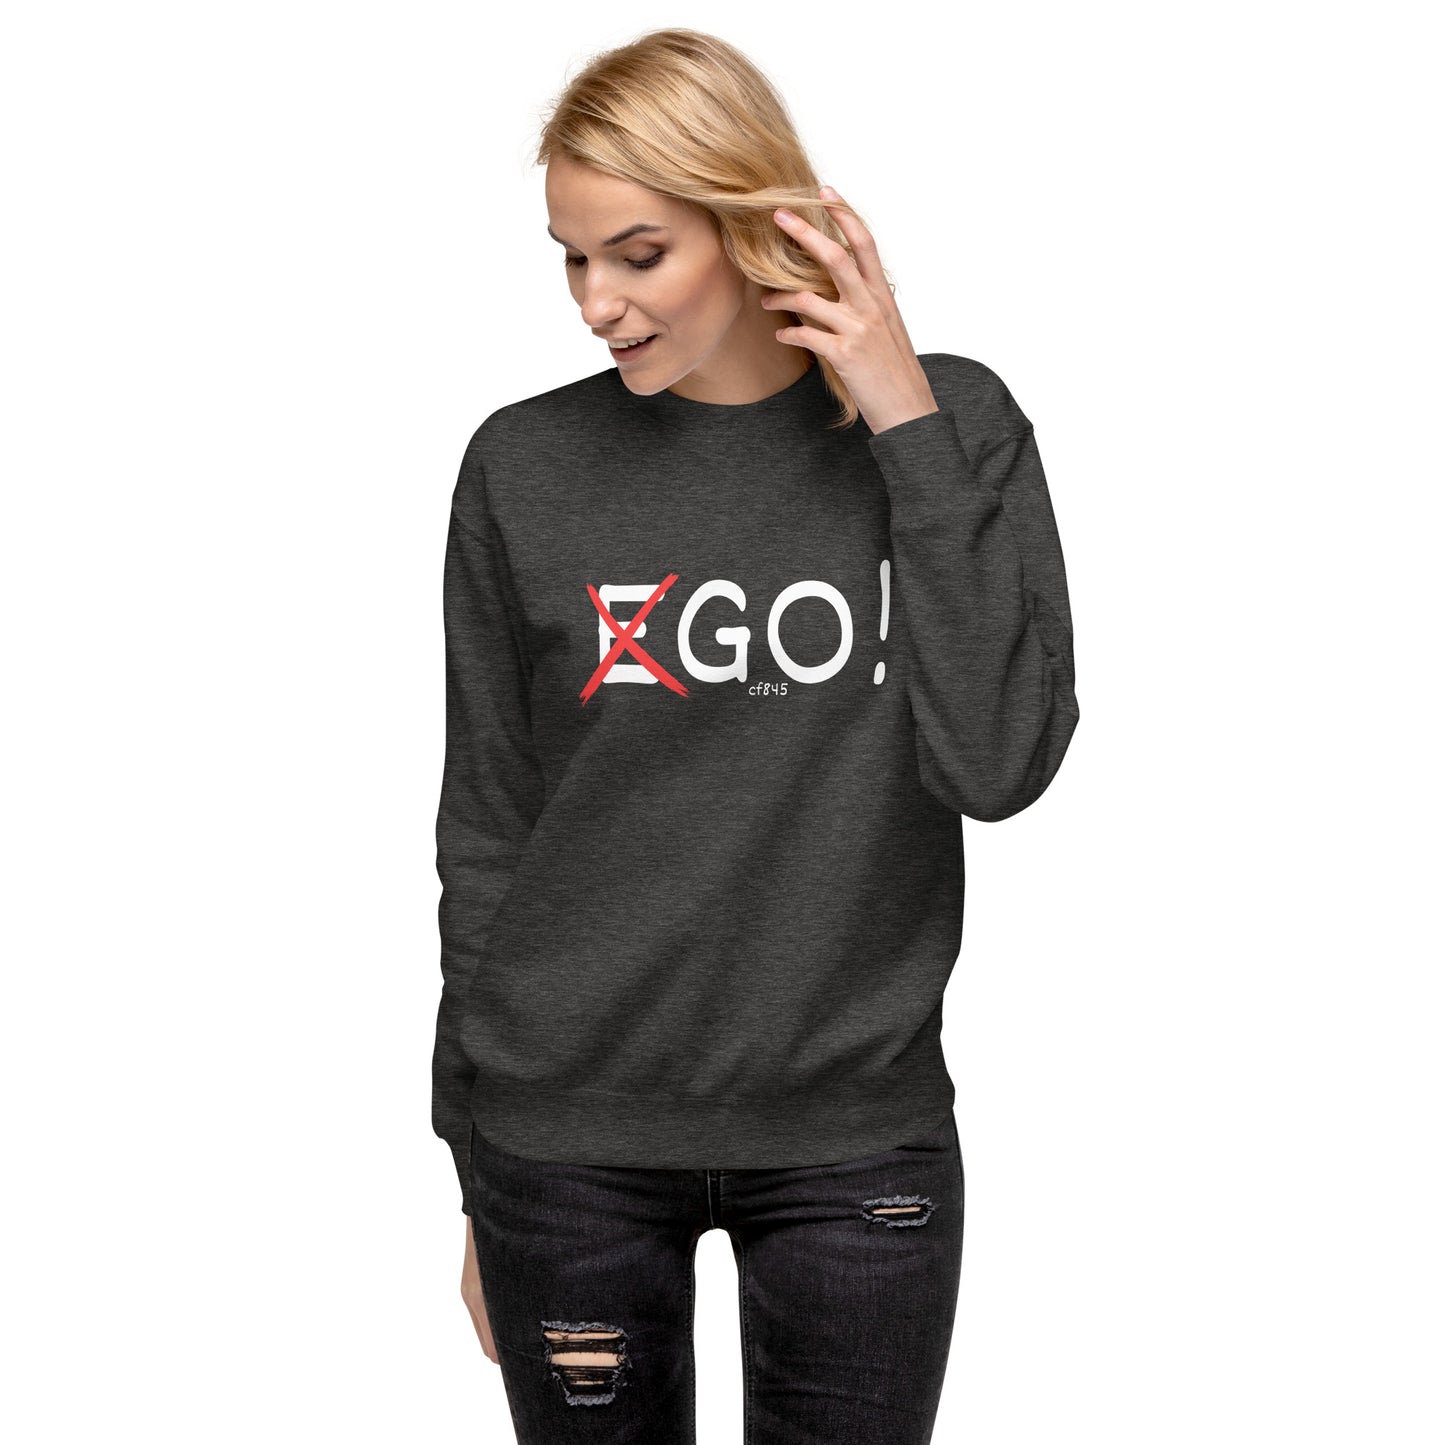 Ego Sweatshirt